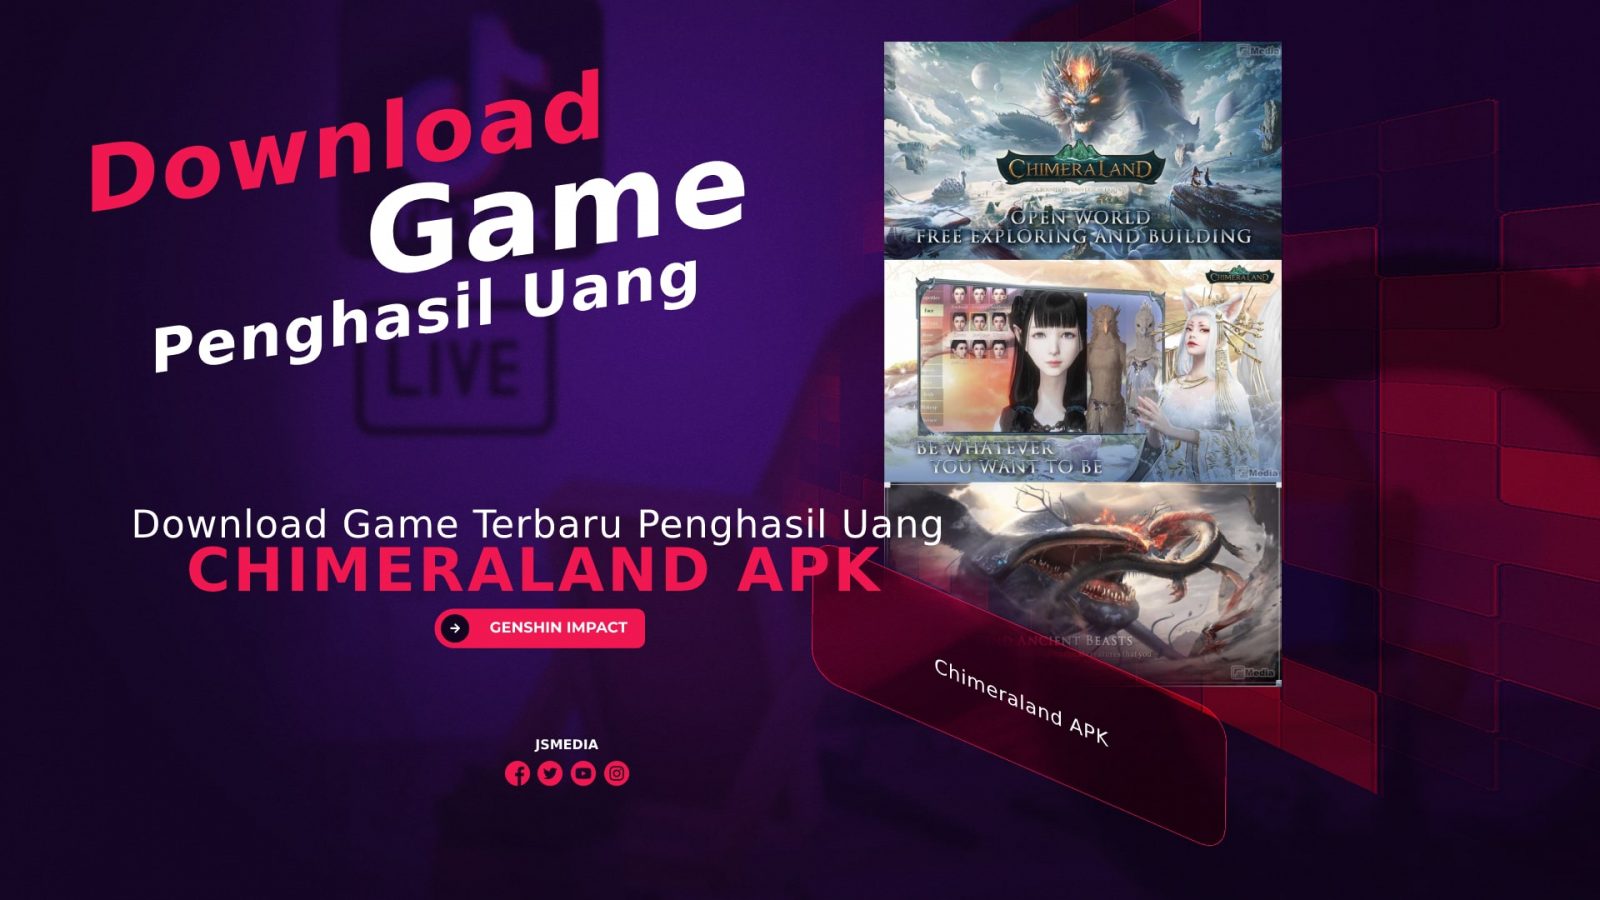 Download Game Chimeraland APK Terbaru, Bisa Menghasilkan Uang?